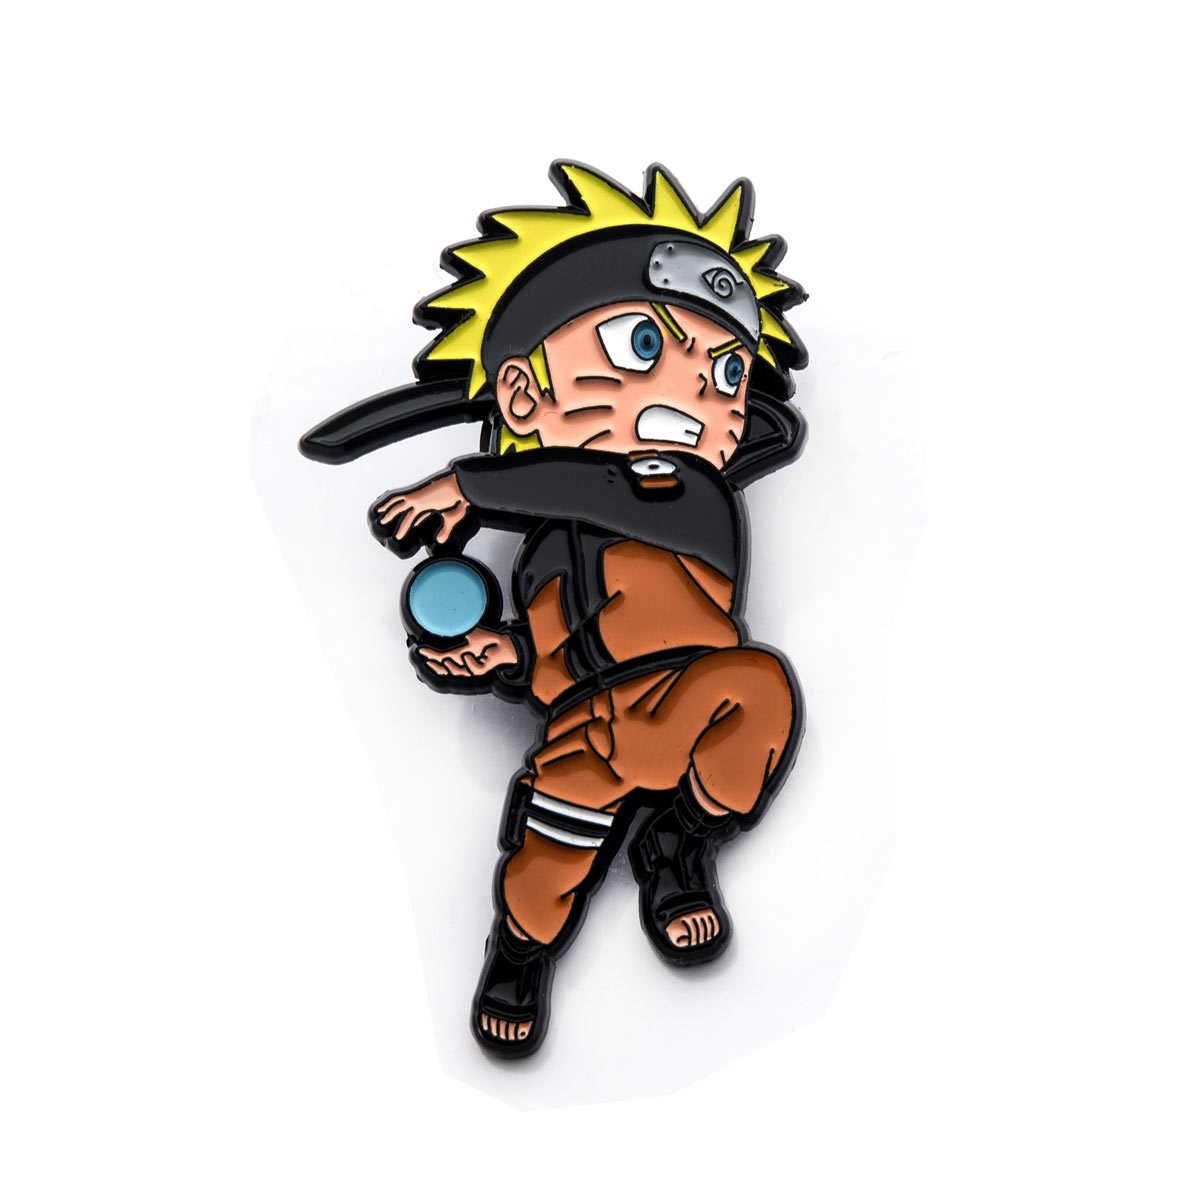 Những chiếc ghim chibi Naruto tuyệt đẹp sẽ khiến bạn phấn khích. Hãy trang trí áo sơ mi của bạn với những chiếc ghim đó và thể hiện tình yêu của mình với bộ truyện Naruto đáng yêu, được tạo nên từ các nhân vật chibi.